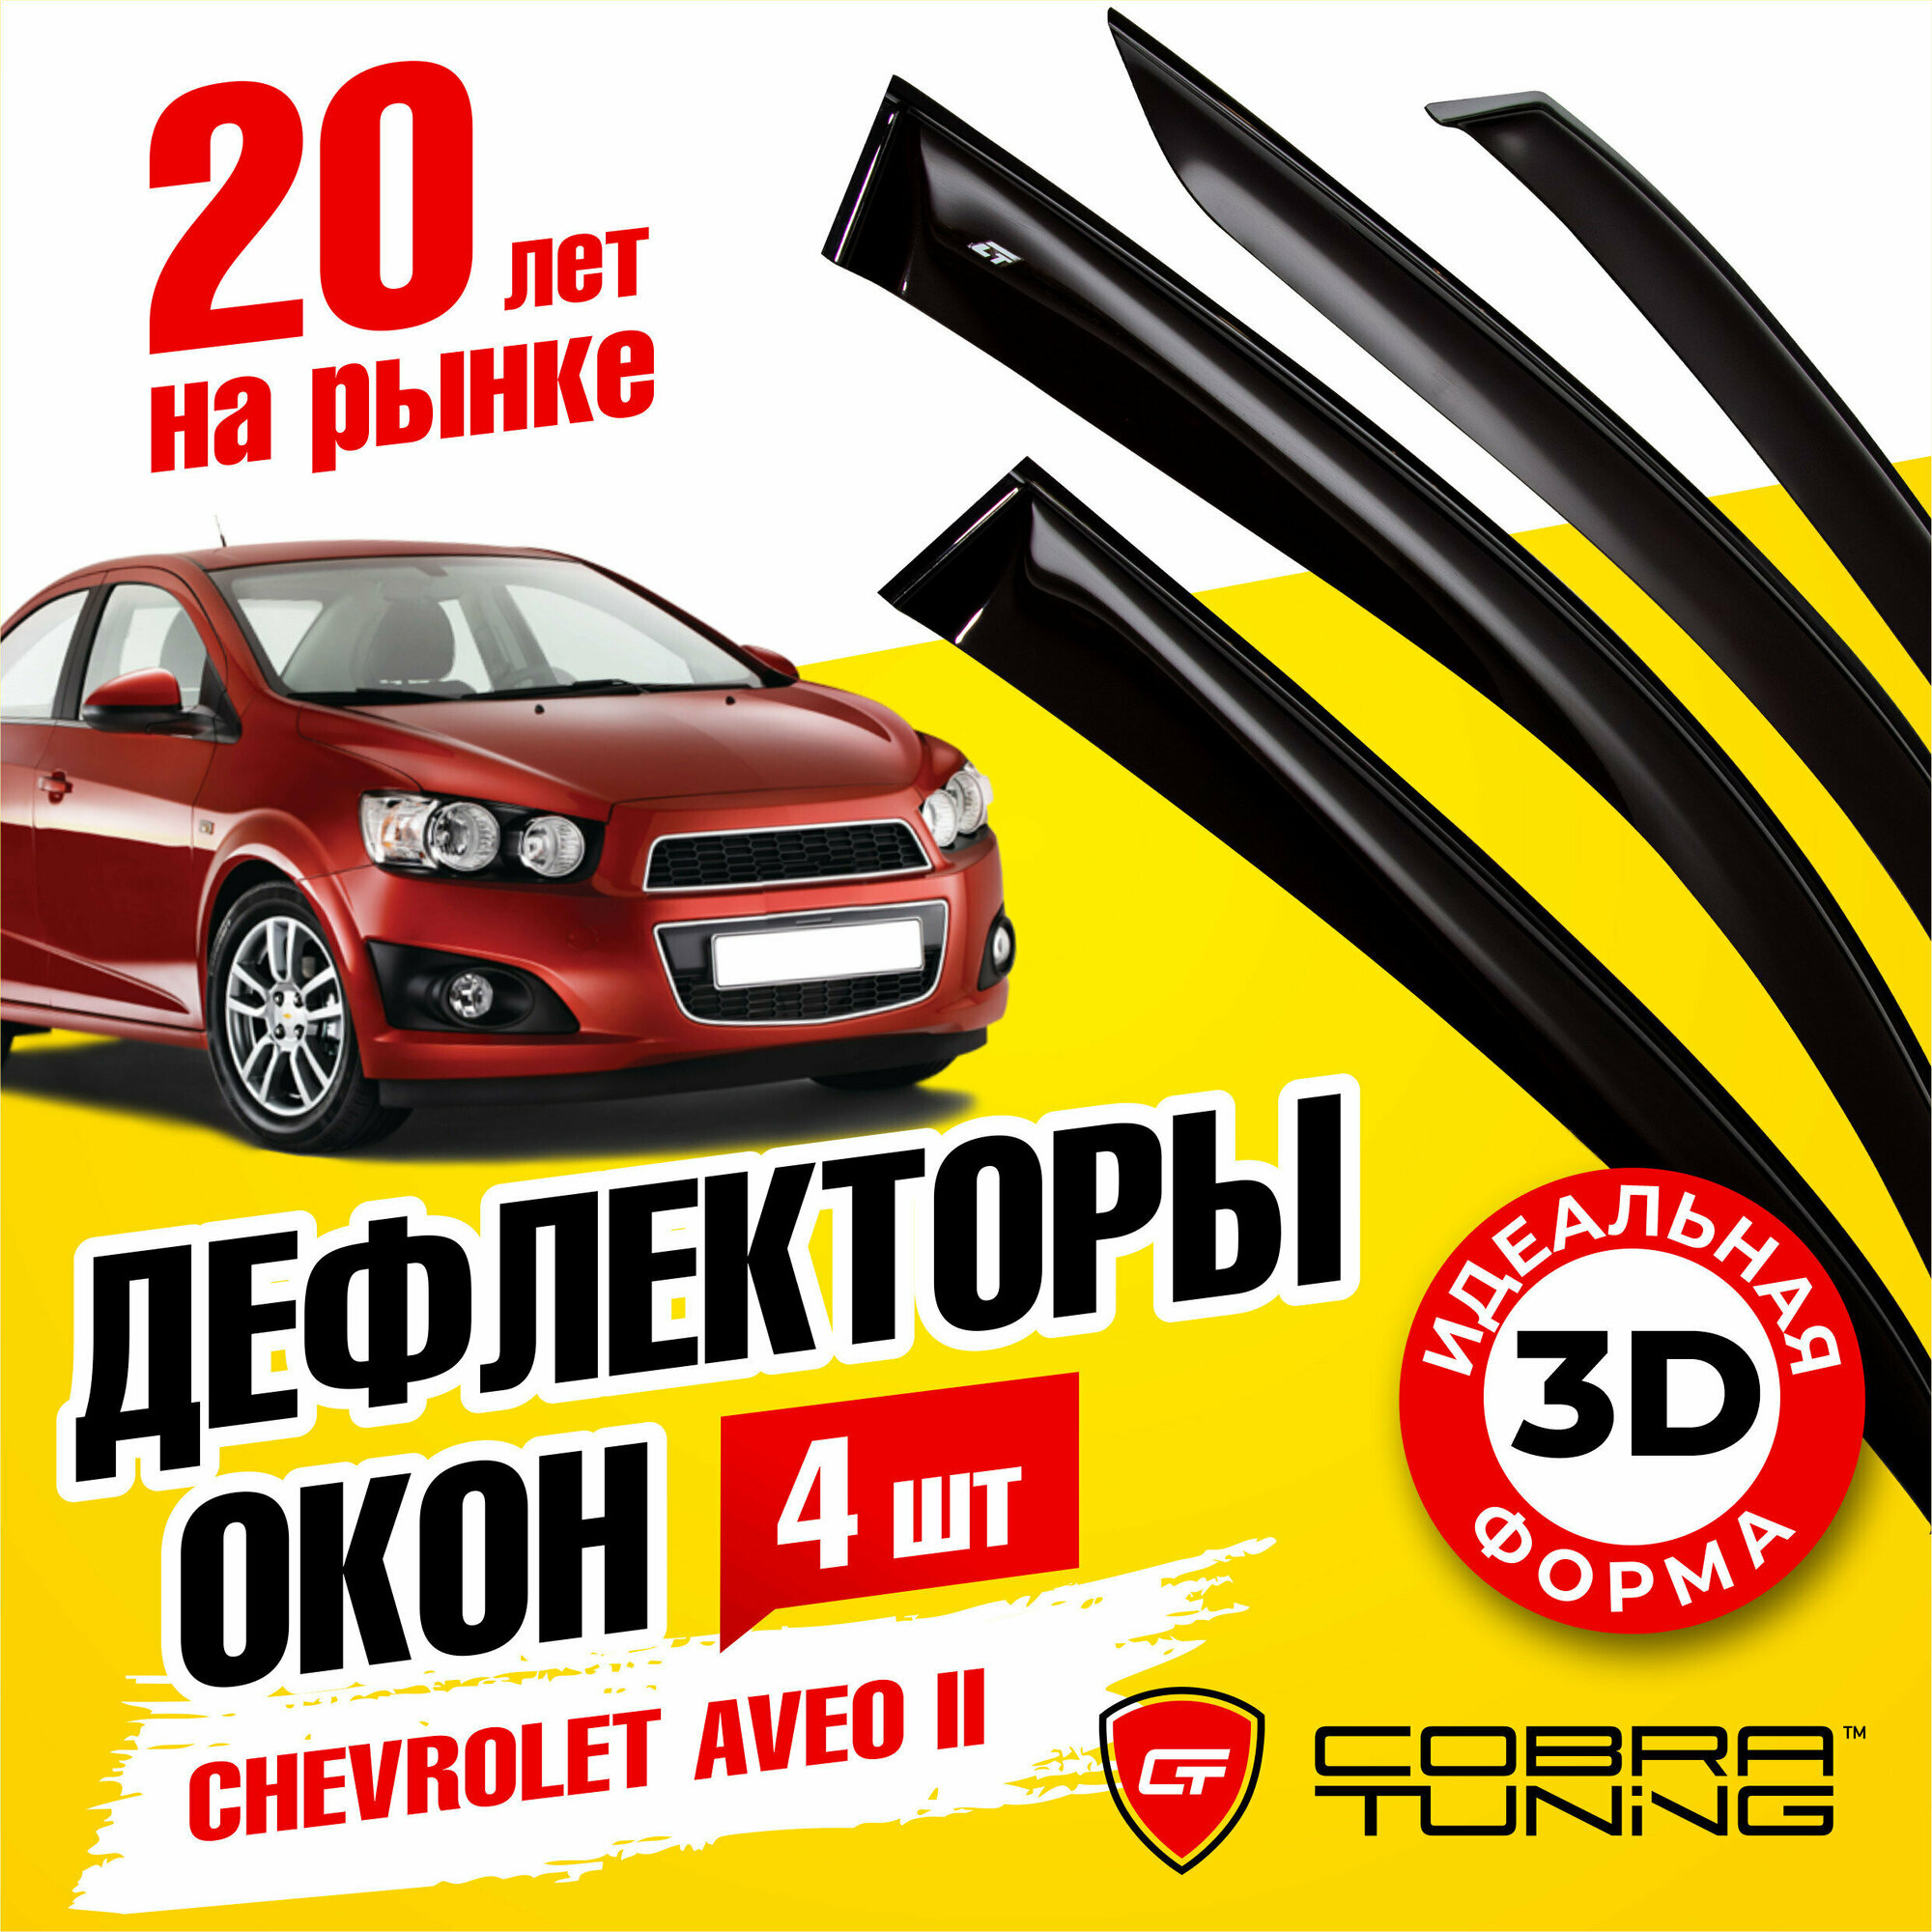 Дефлекторы боковых окон для Chevrolet Aveo 2 (Шевроле Авео) T300 кузов седан 2011-2020, ветровики на двери автомобиля, Cobra Tuning